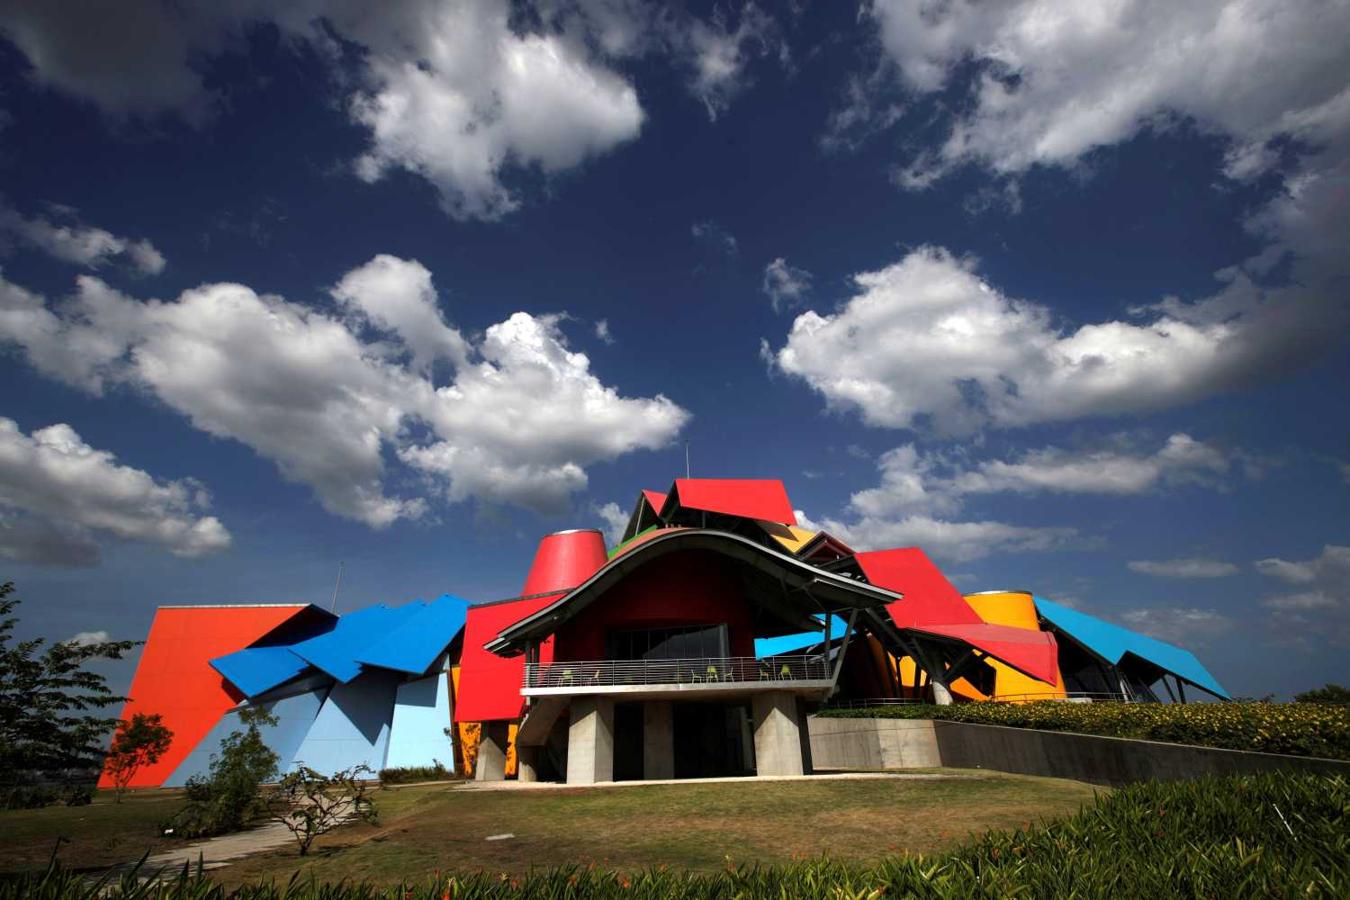 Museo de Historia Natural de Panamá (Biomuseo), diseñado por el arquitecto canadiense Frank Gehry